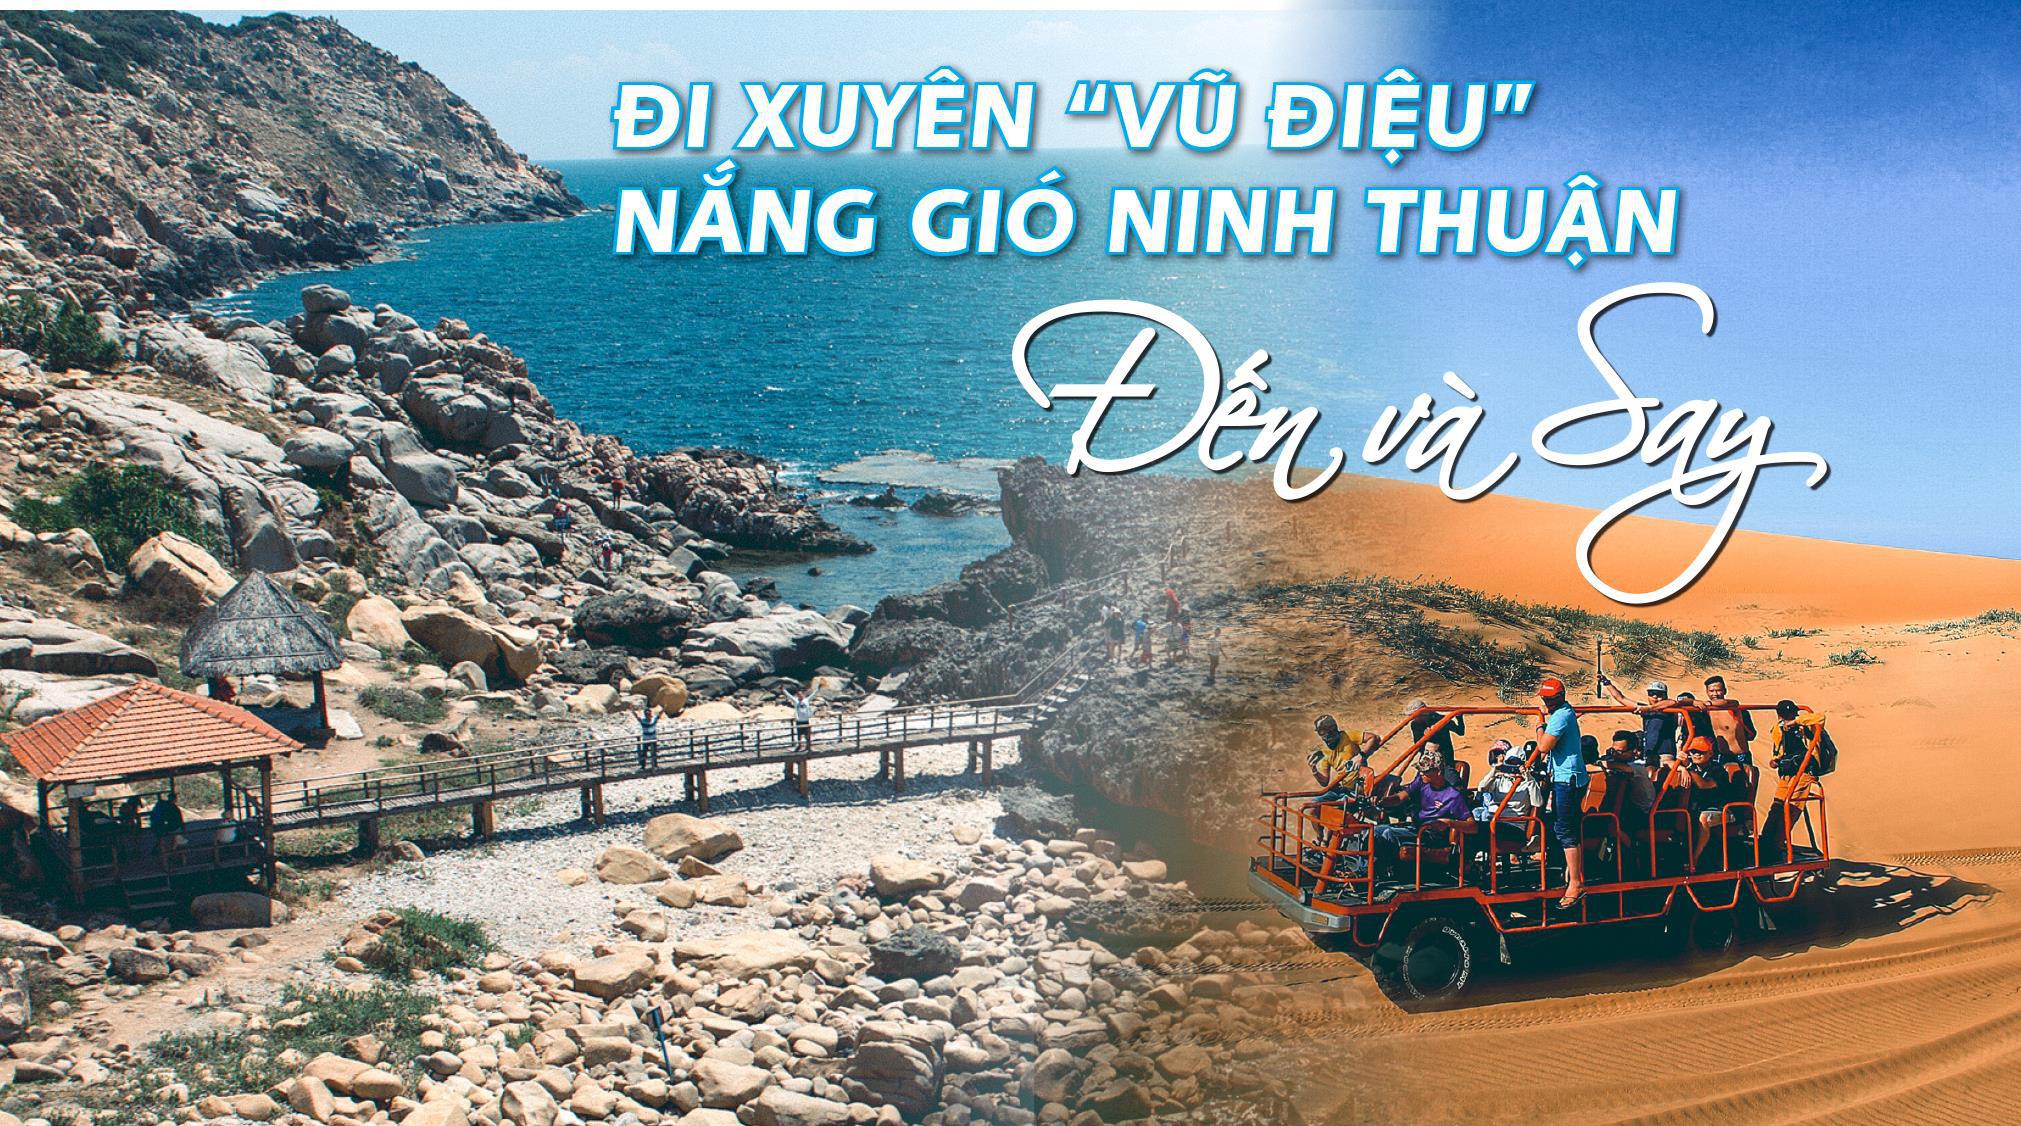 Hà Nội - Nha Trang - Mũi Né - Ninh Thuận 4 Ngày 3 Đêm Bay Vietnam Airlines